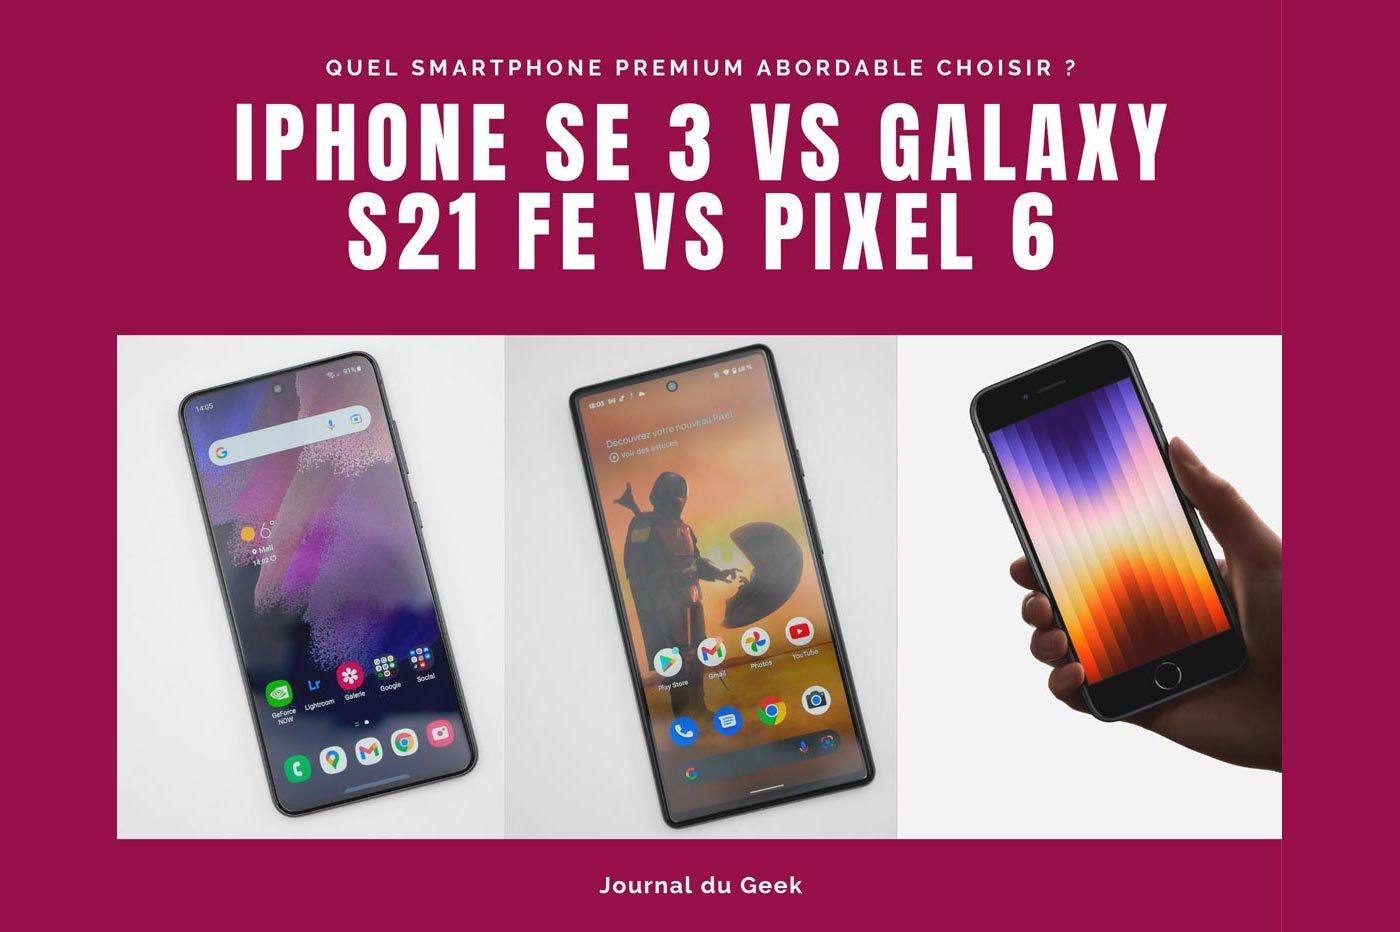 iPhone SE3 vs Galaxy S21 FE vs Pixel 6